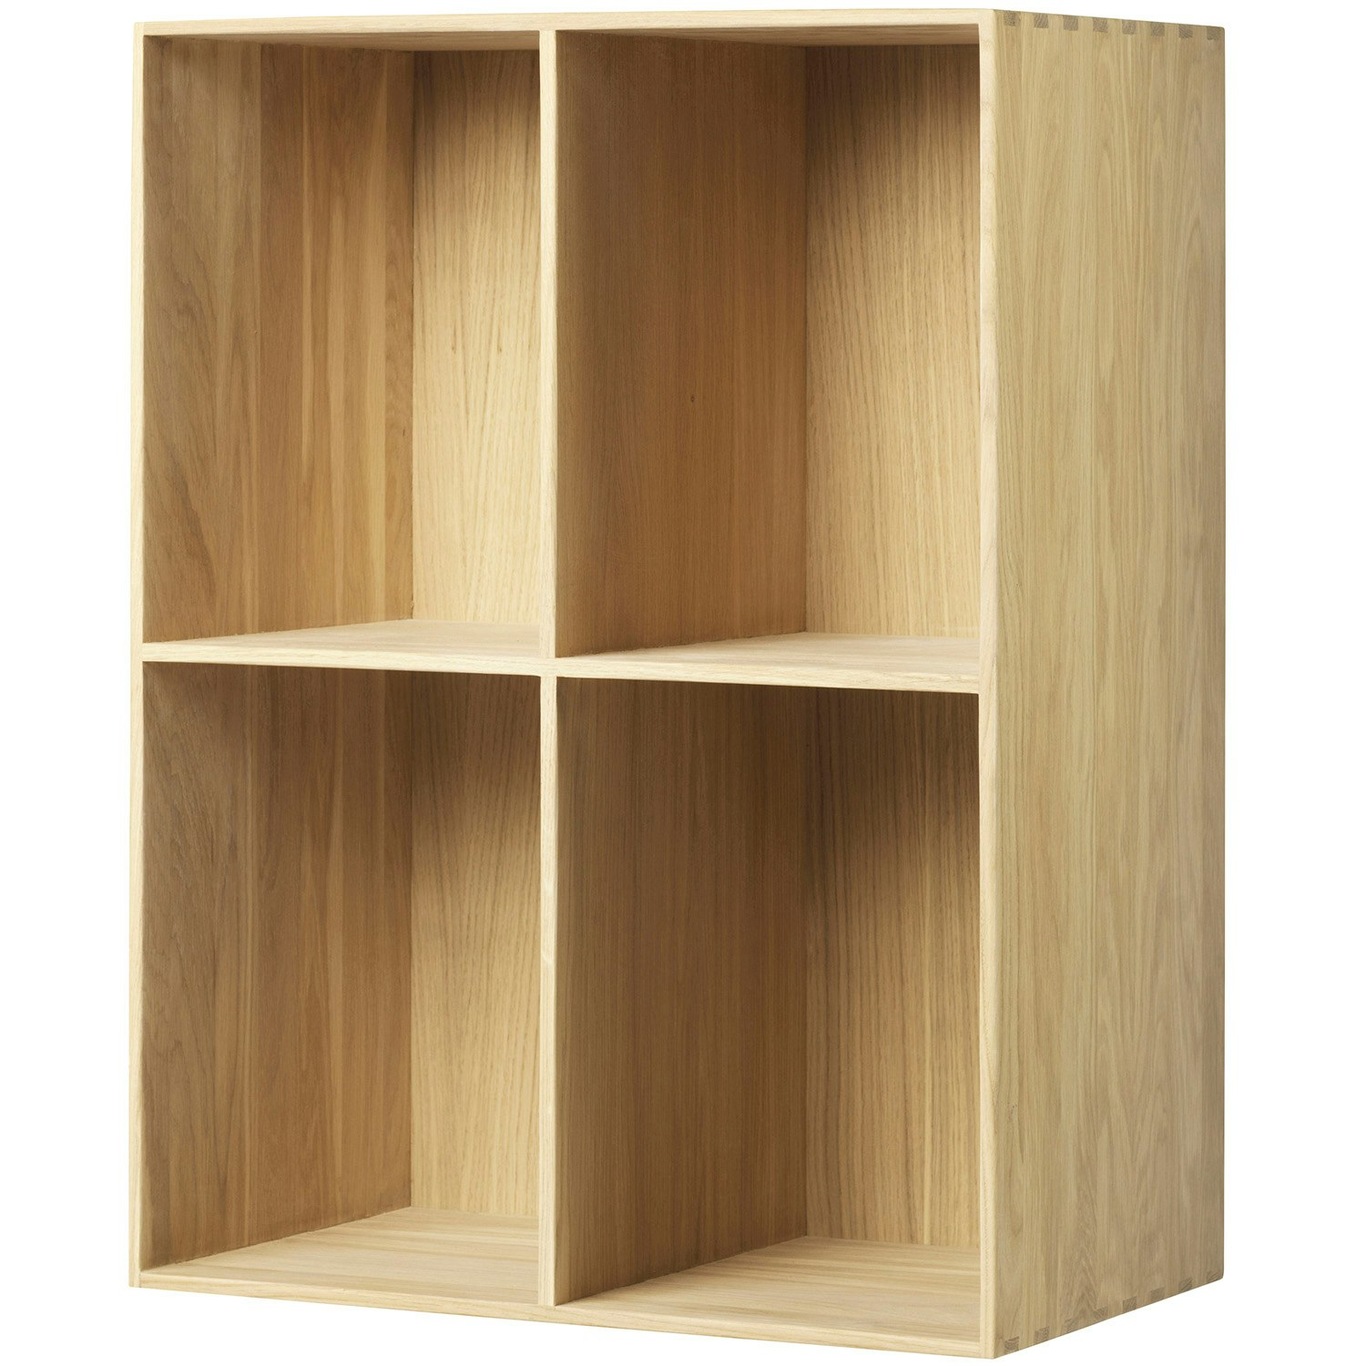 B98 Bookshelf Oak, 50x70 cm